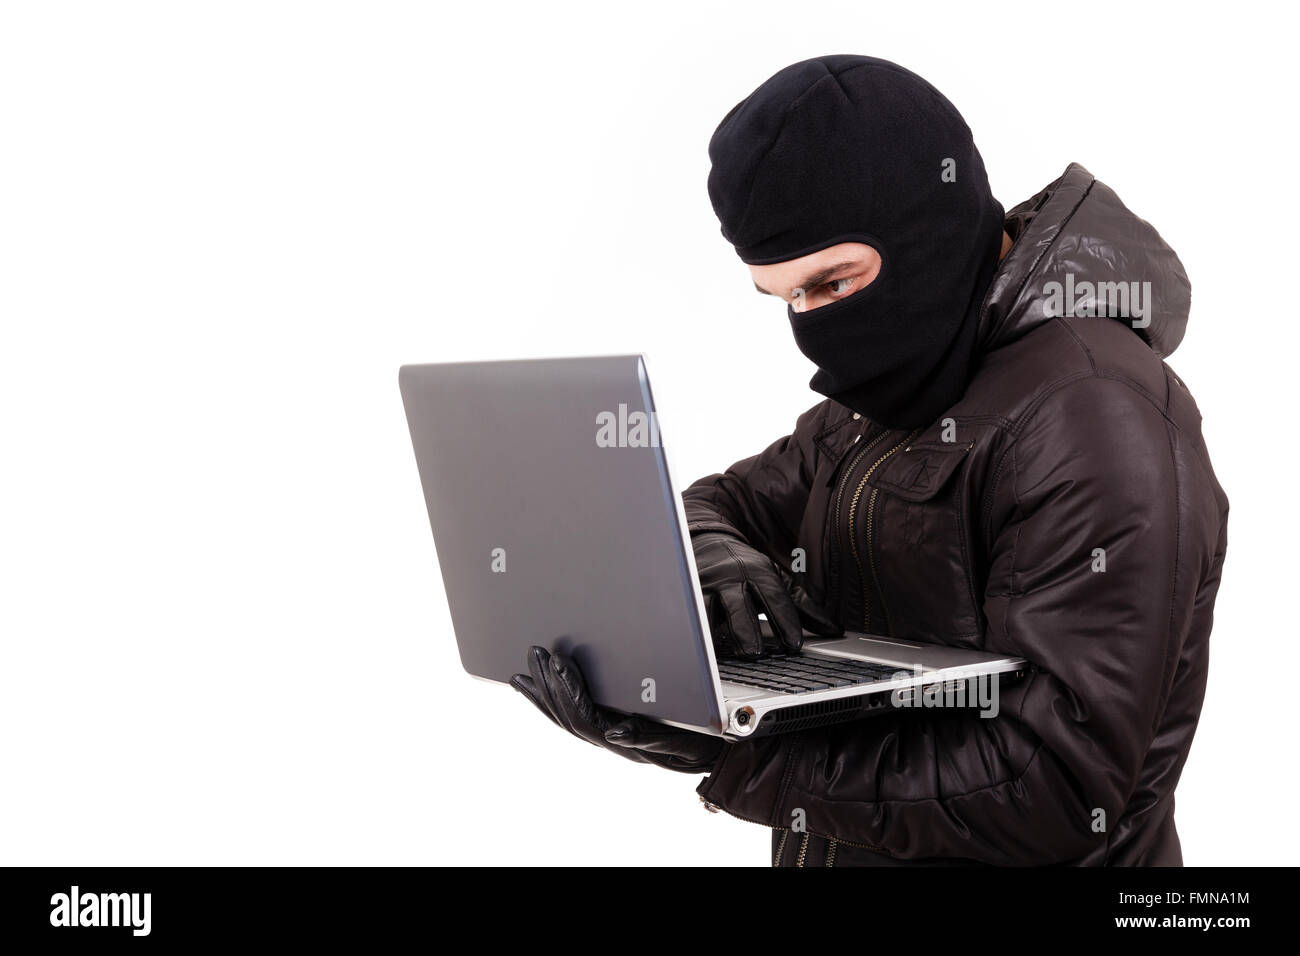 Pirate informatique de voler des informations à partir d'un ordinateur portable, isolé sur fond blanc Banque D'Images